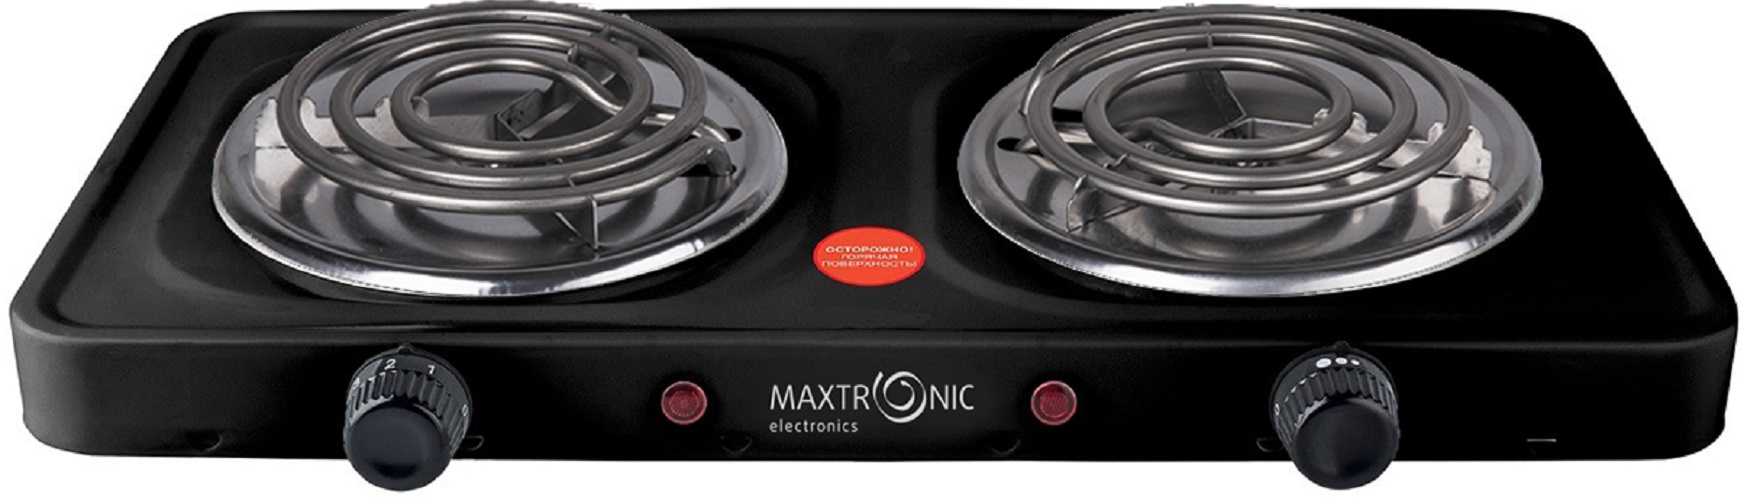 Настольная электрическая плитка MAXTRONIC MAX-AT-002BS черный настольная электрическая плитка maxtronic max at 002bs